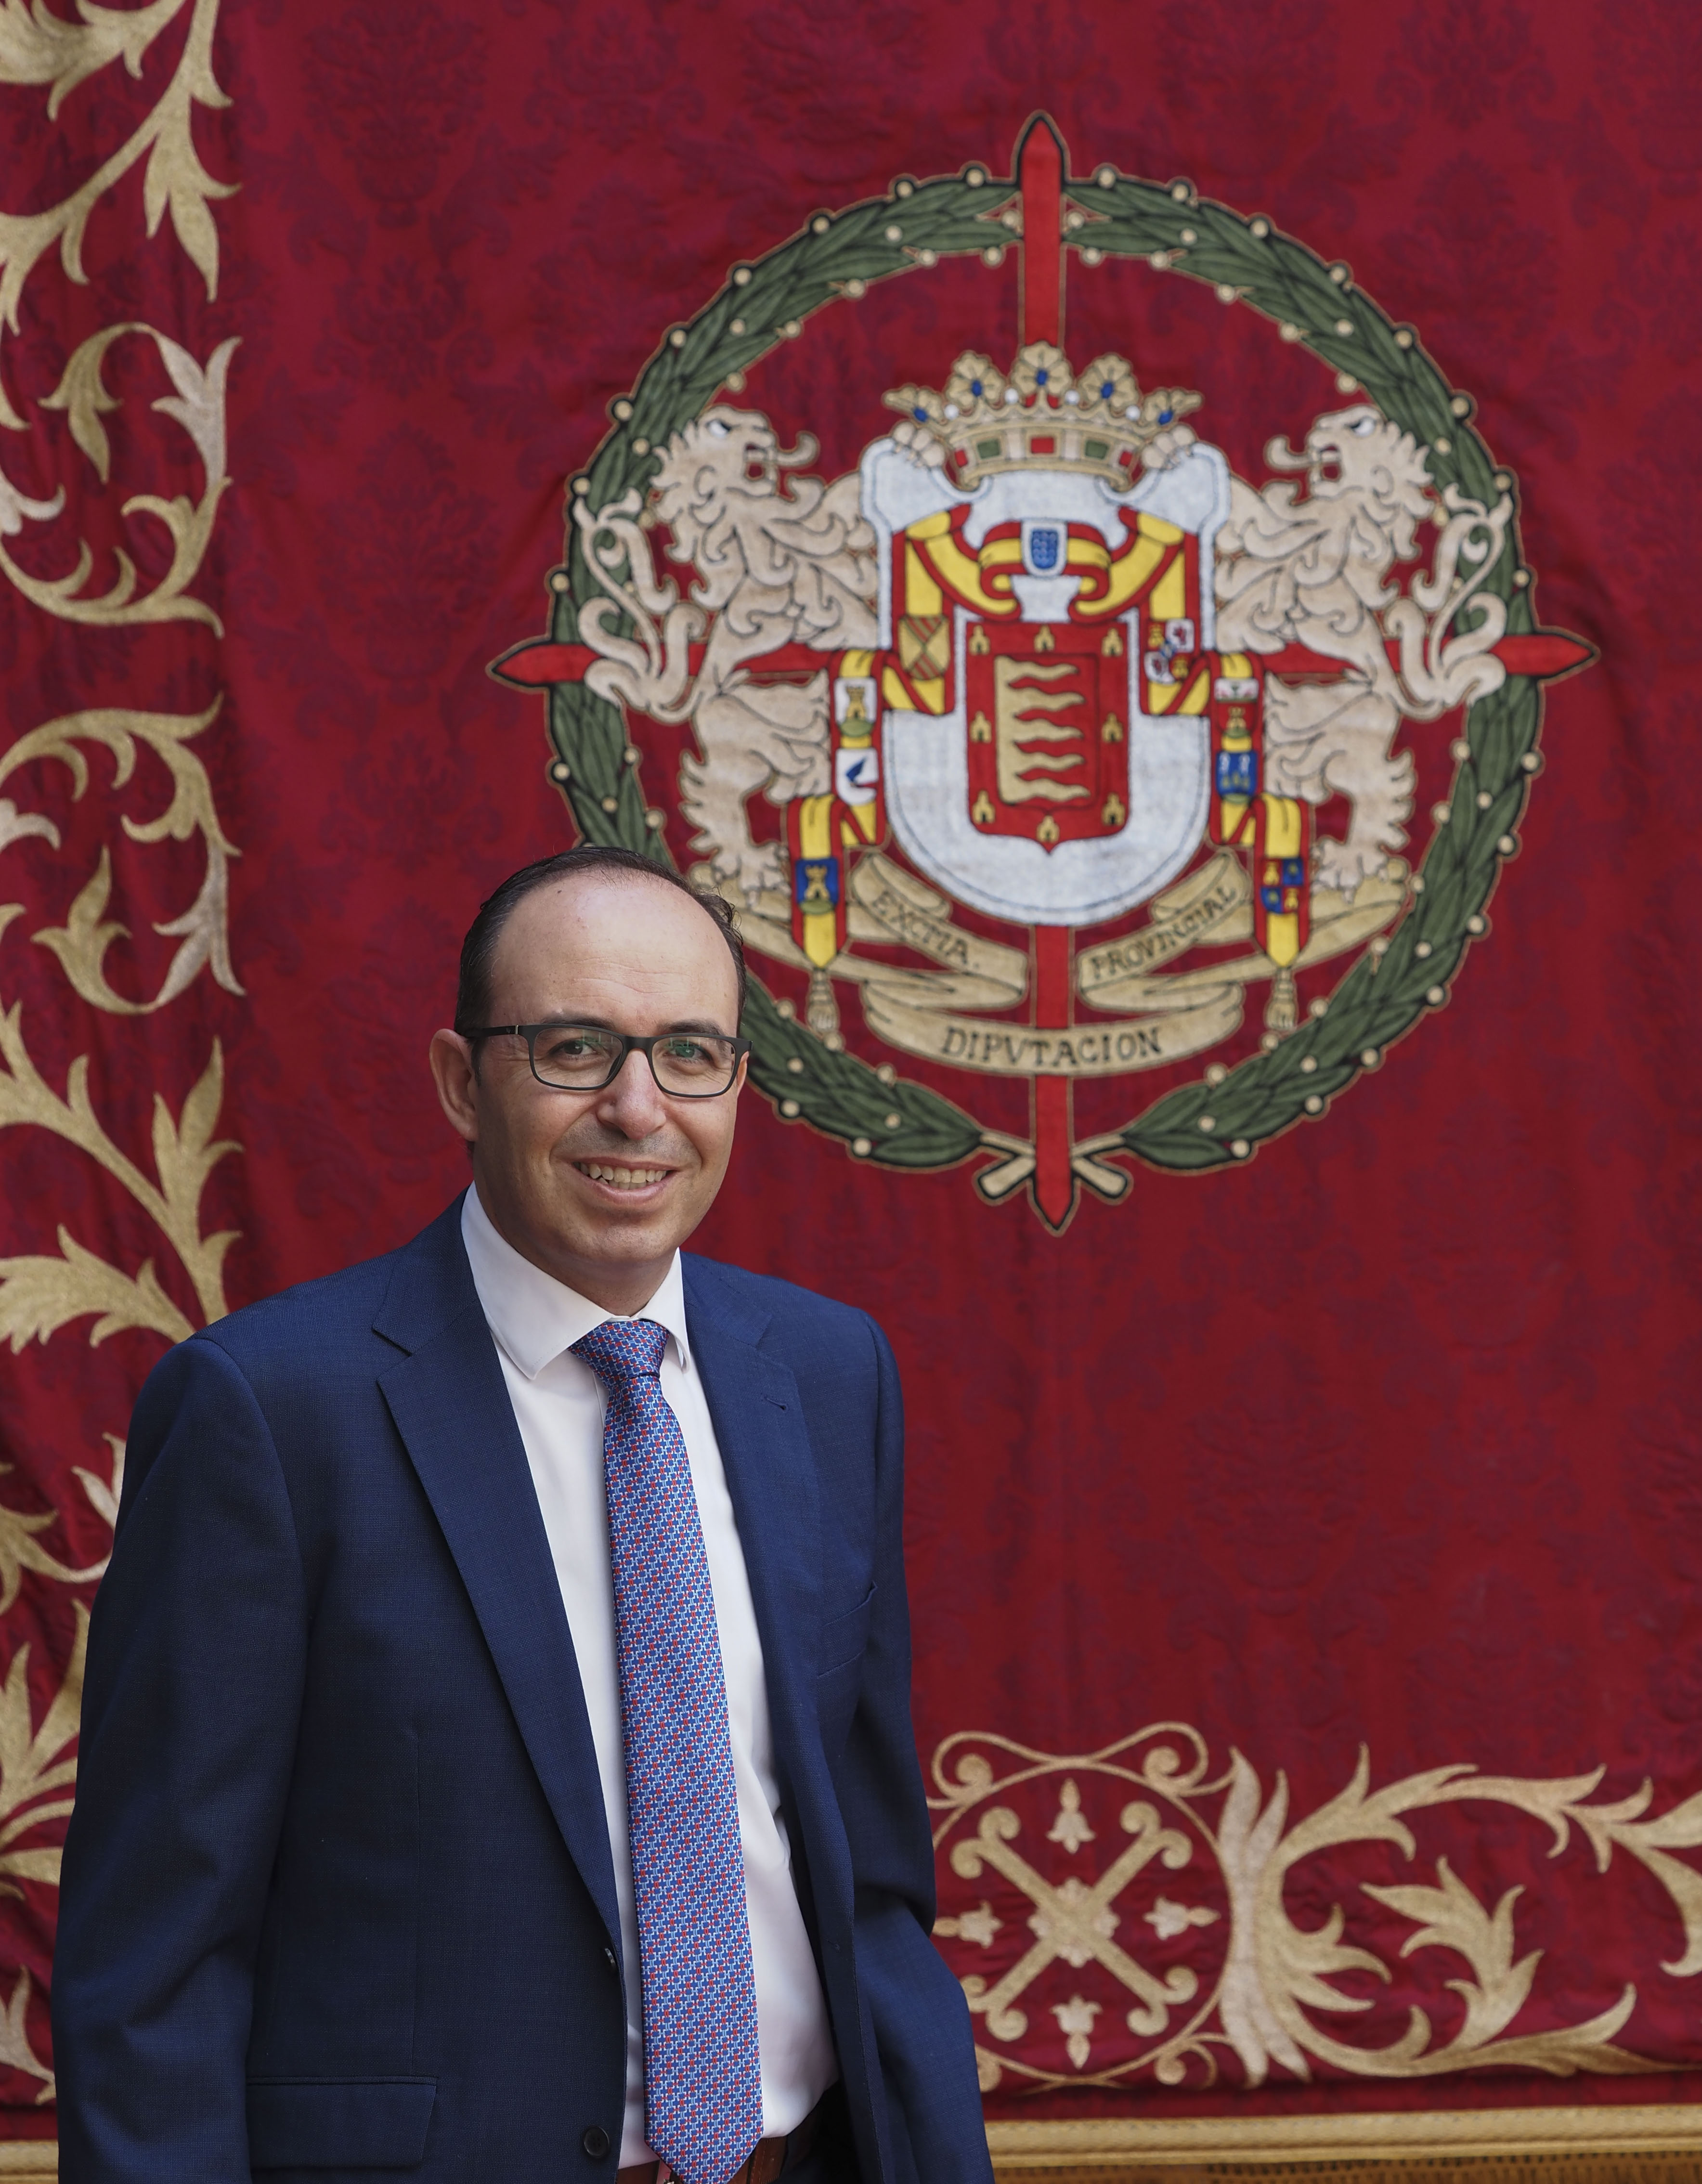 Equipo de Gobierno-Víctor David Alonso Monge